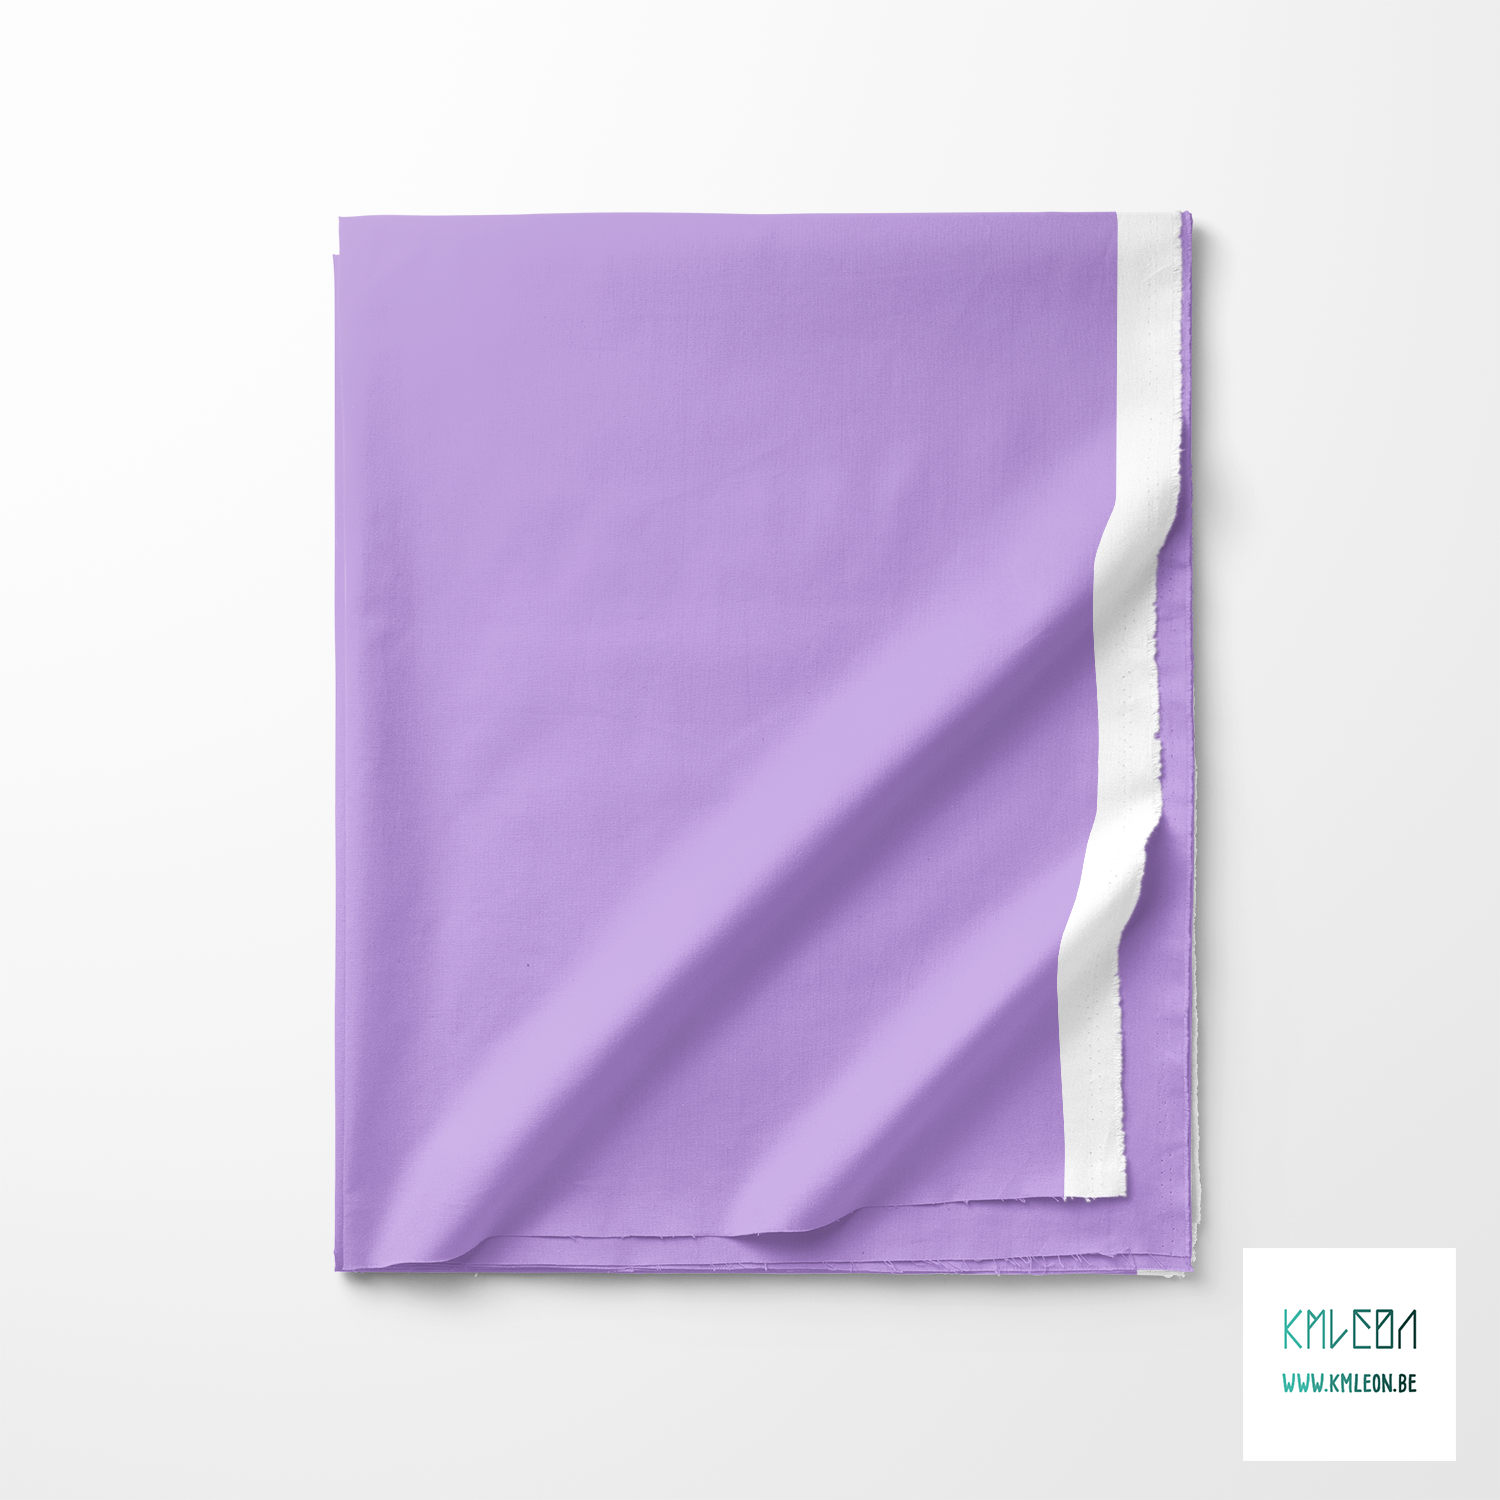 Solid wisteria purple fabric